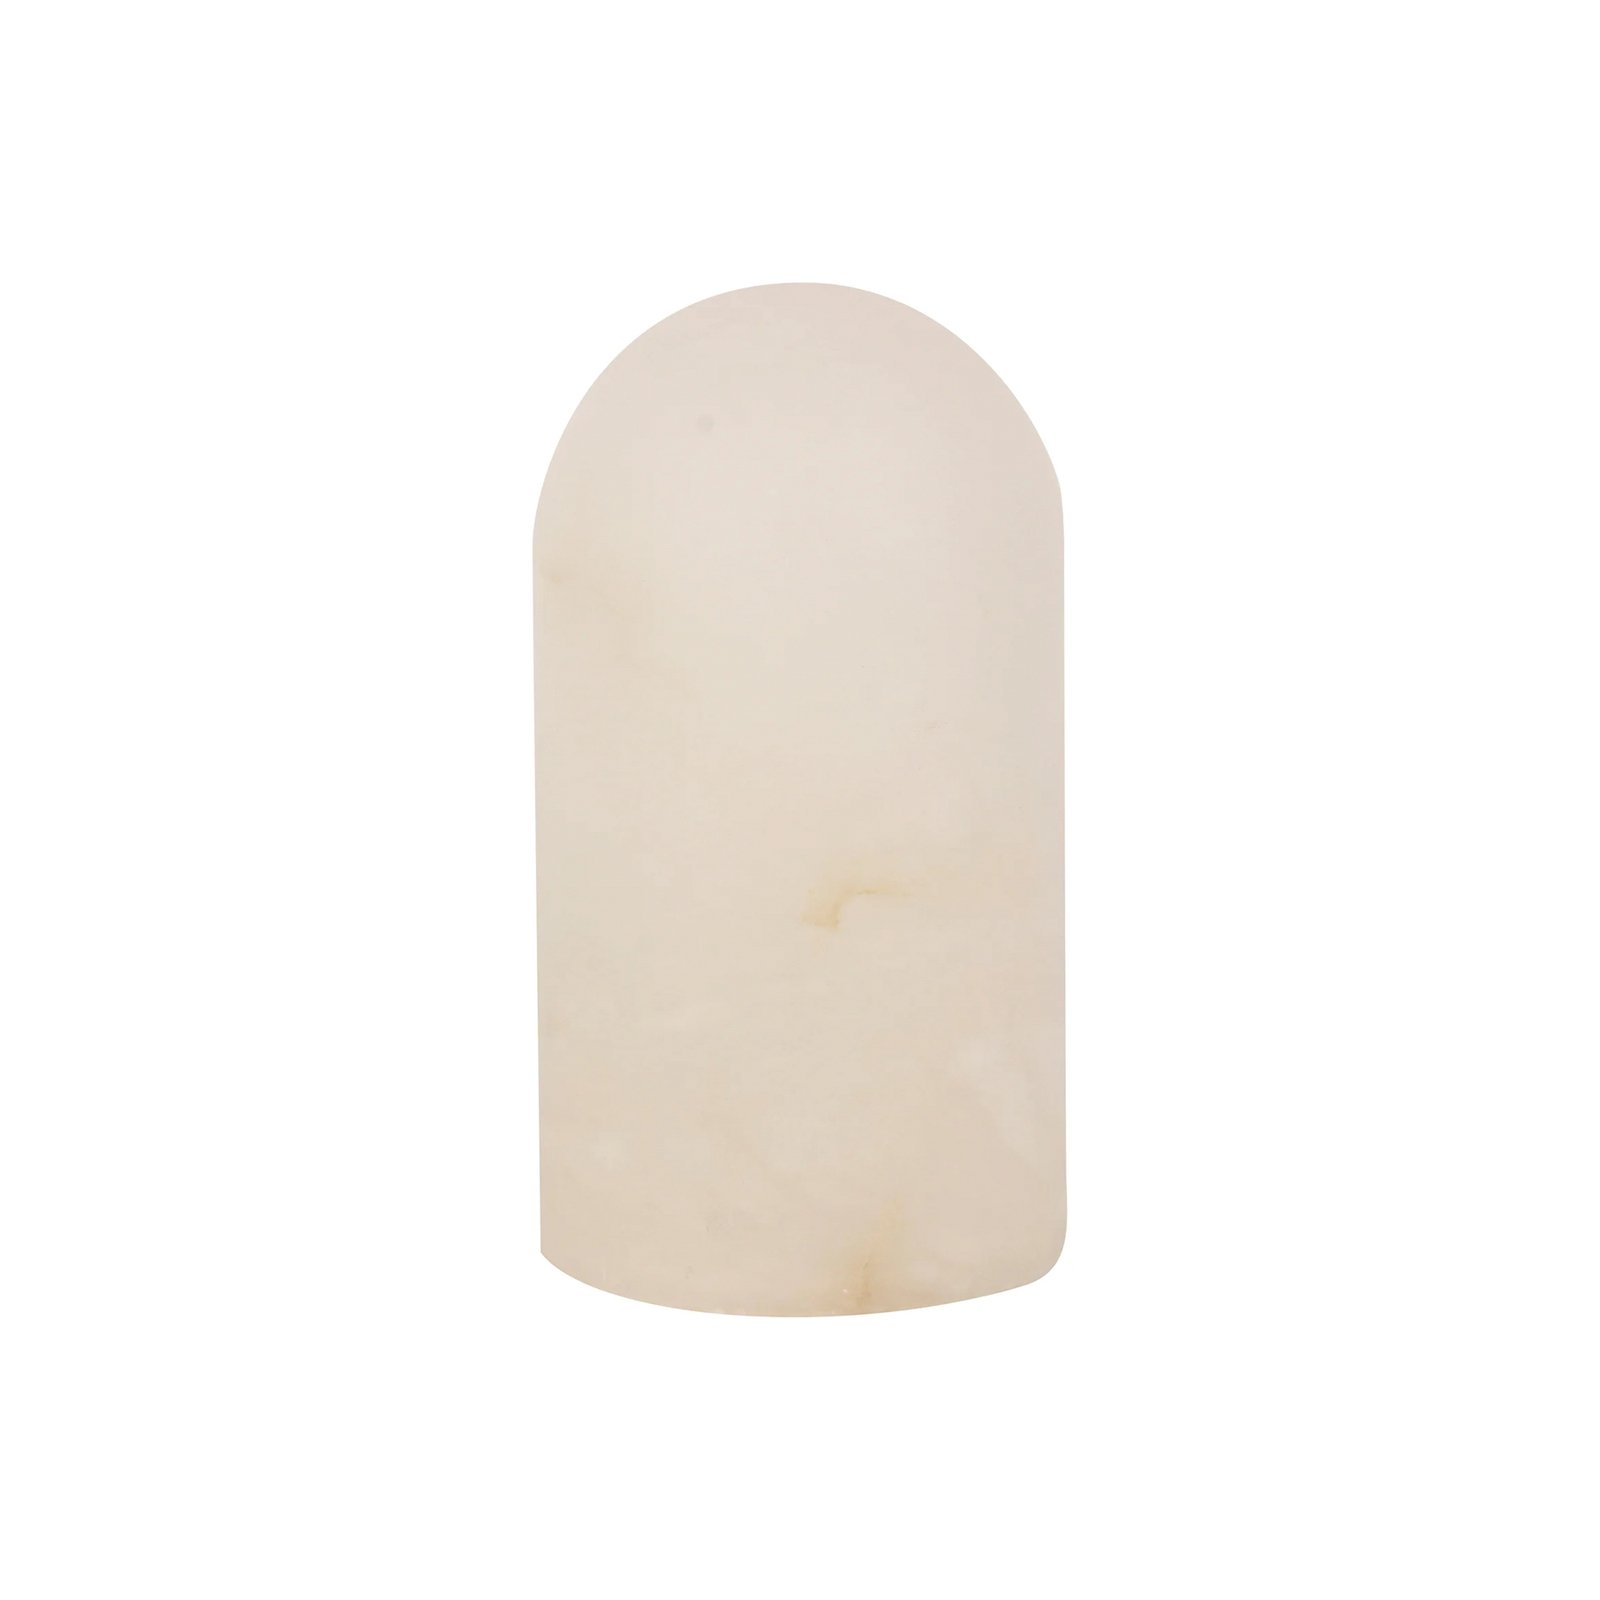 Stolní lampa Beacon Panton, bílý alabastrový kámen, výška 17,5 cm